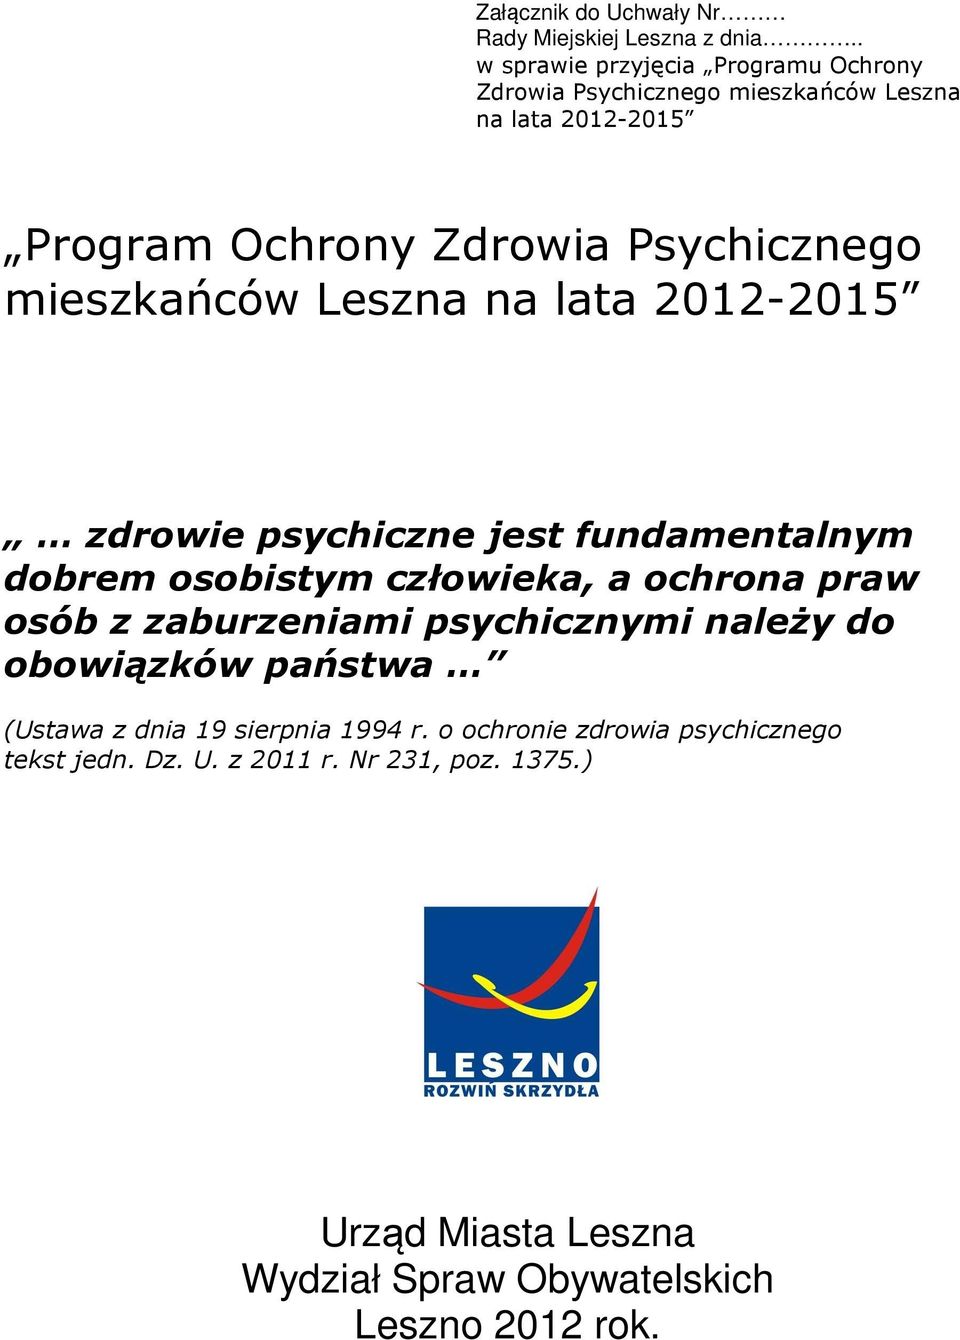 mieszkańców Leszna na lata 2012-2015 zdrowie psychiczne jest fundamentalnym dobrem osobistym człowieka, a ochrona praw osób z